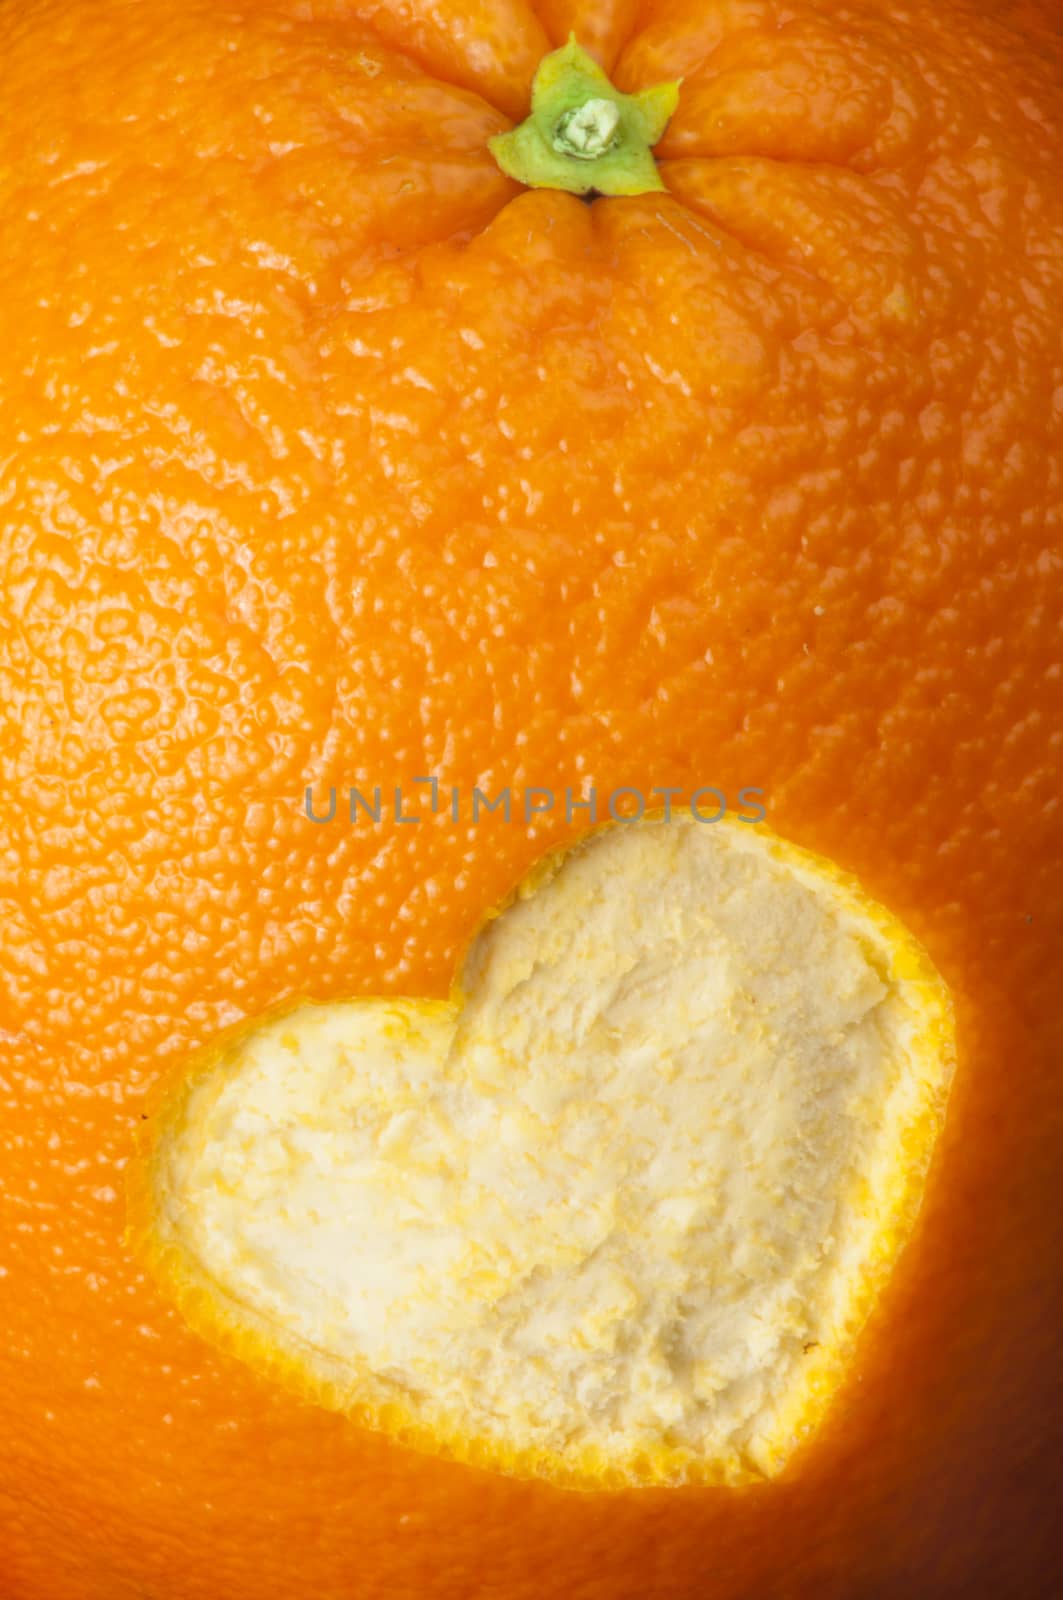 Heart shape carved in orange peel by deyan_georgiev